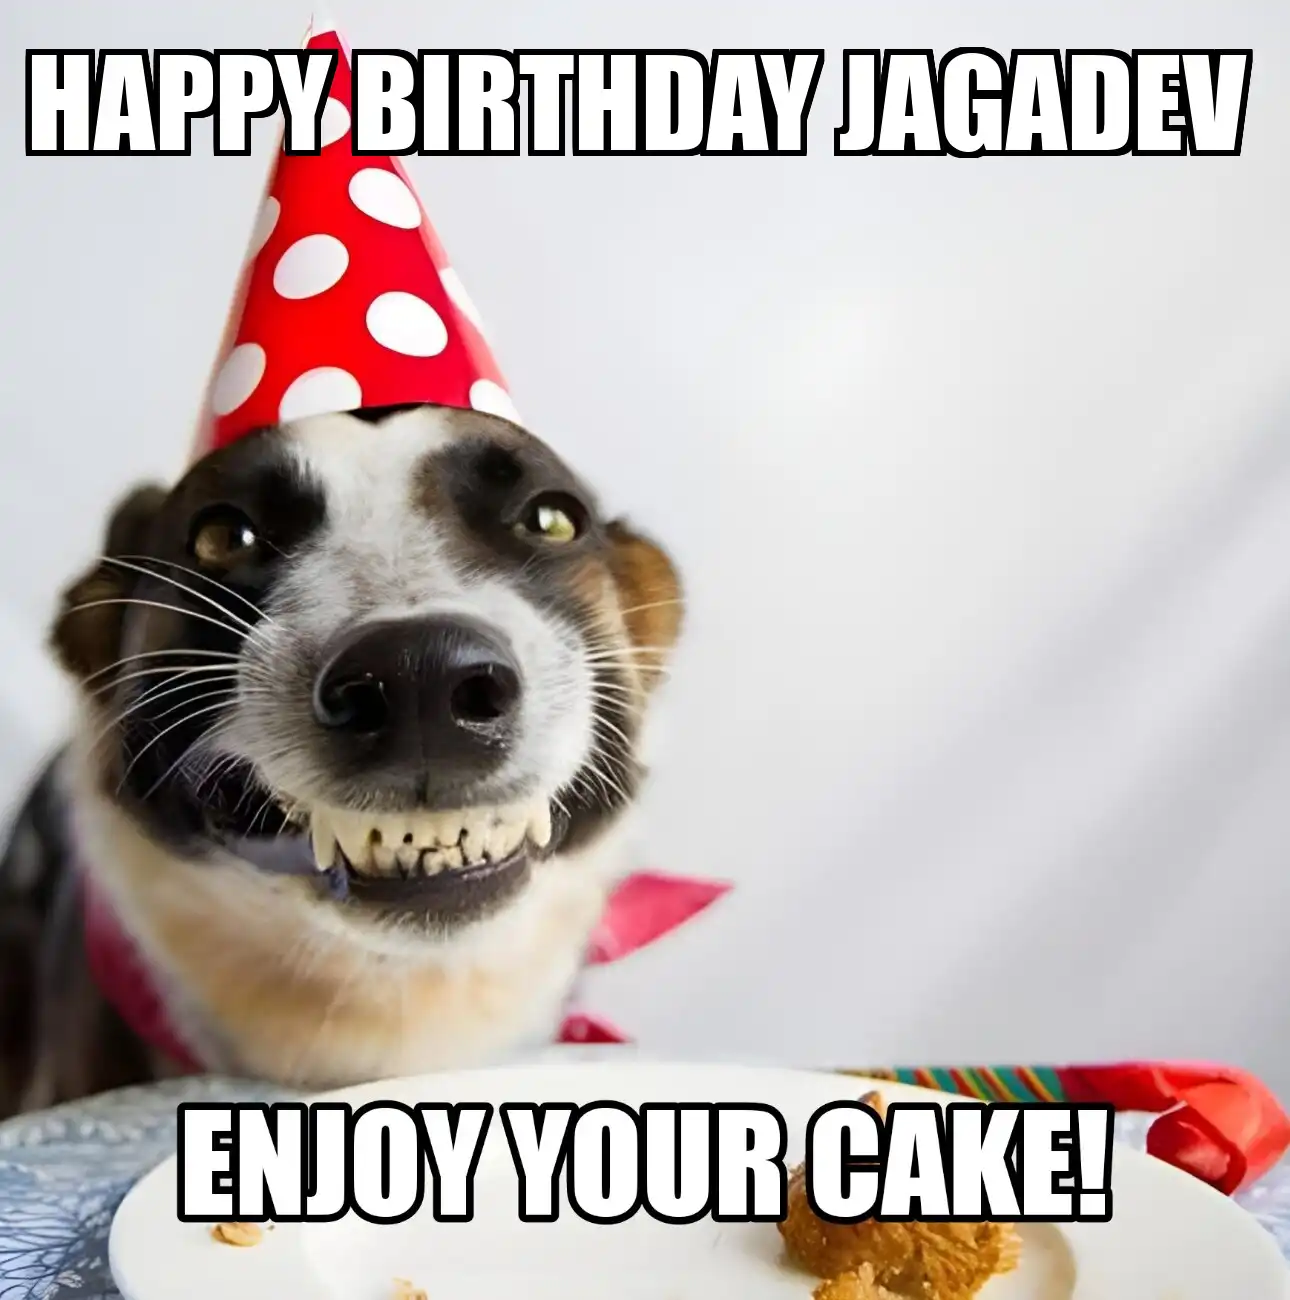 Happy Birthday Jagadev Enjoy Your Cake Dog Meme